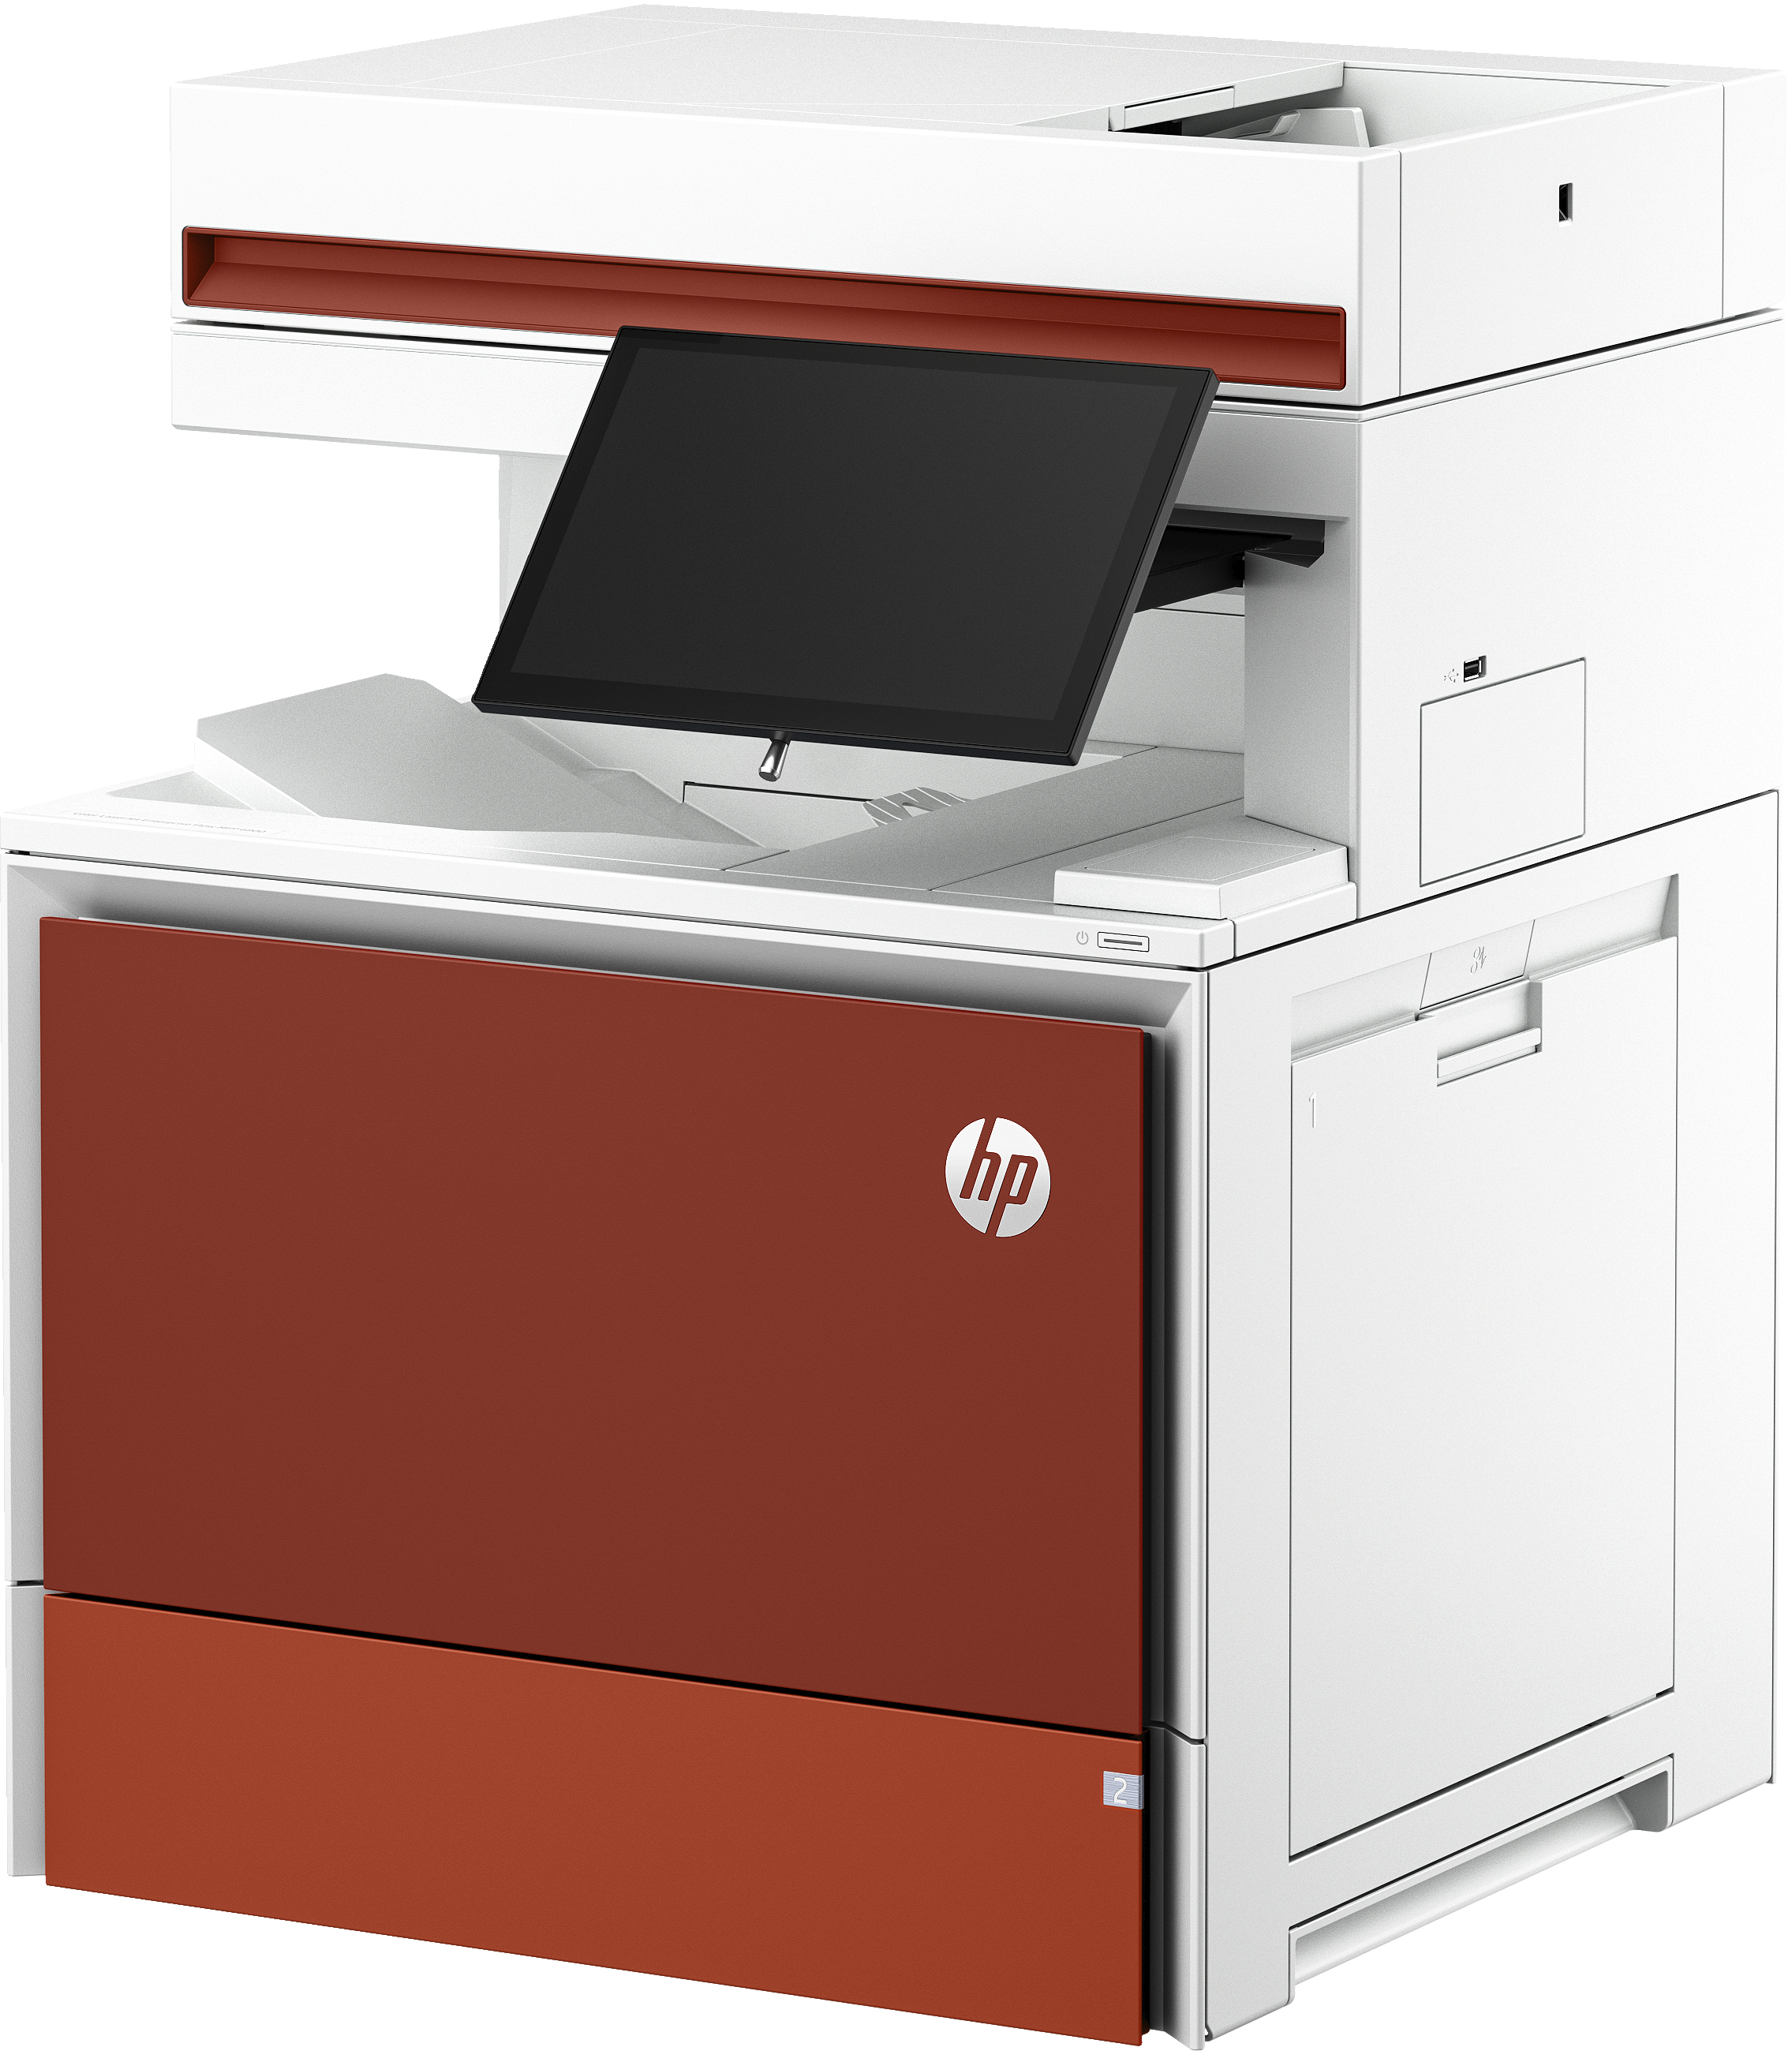 HP Color LaserJet Enterprise Flow Imprimante multifonction 6800zf, Impression, copie, scan, fax, Flow. Écran tactile. Agrafage. Cartouche TerraJet